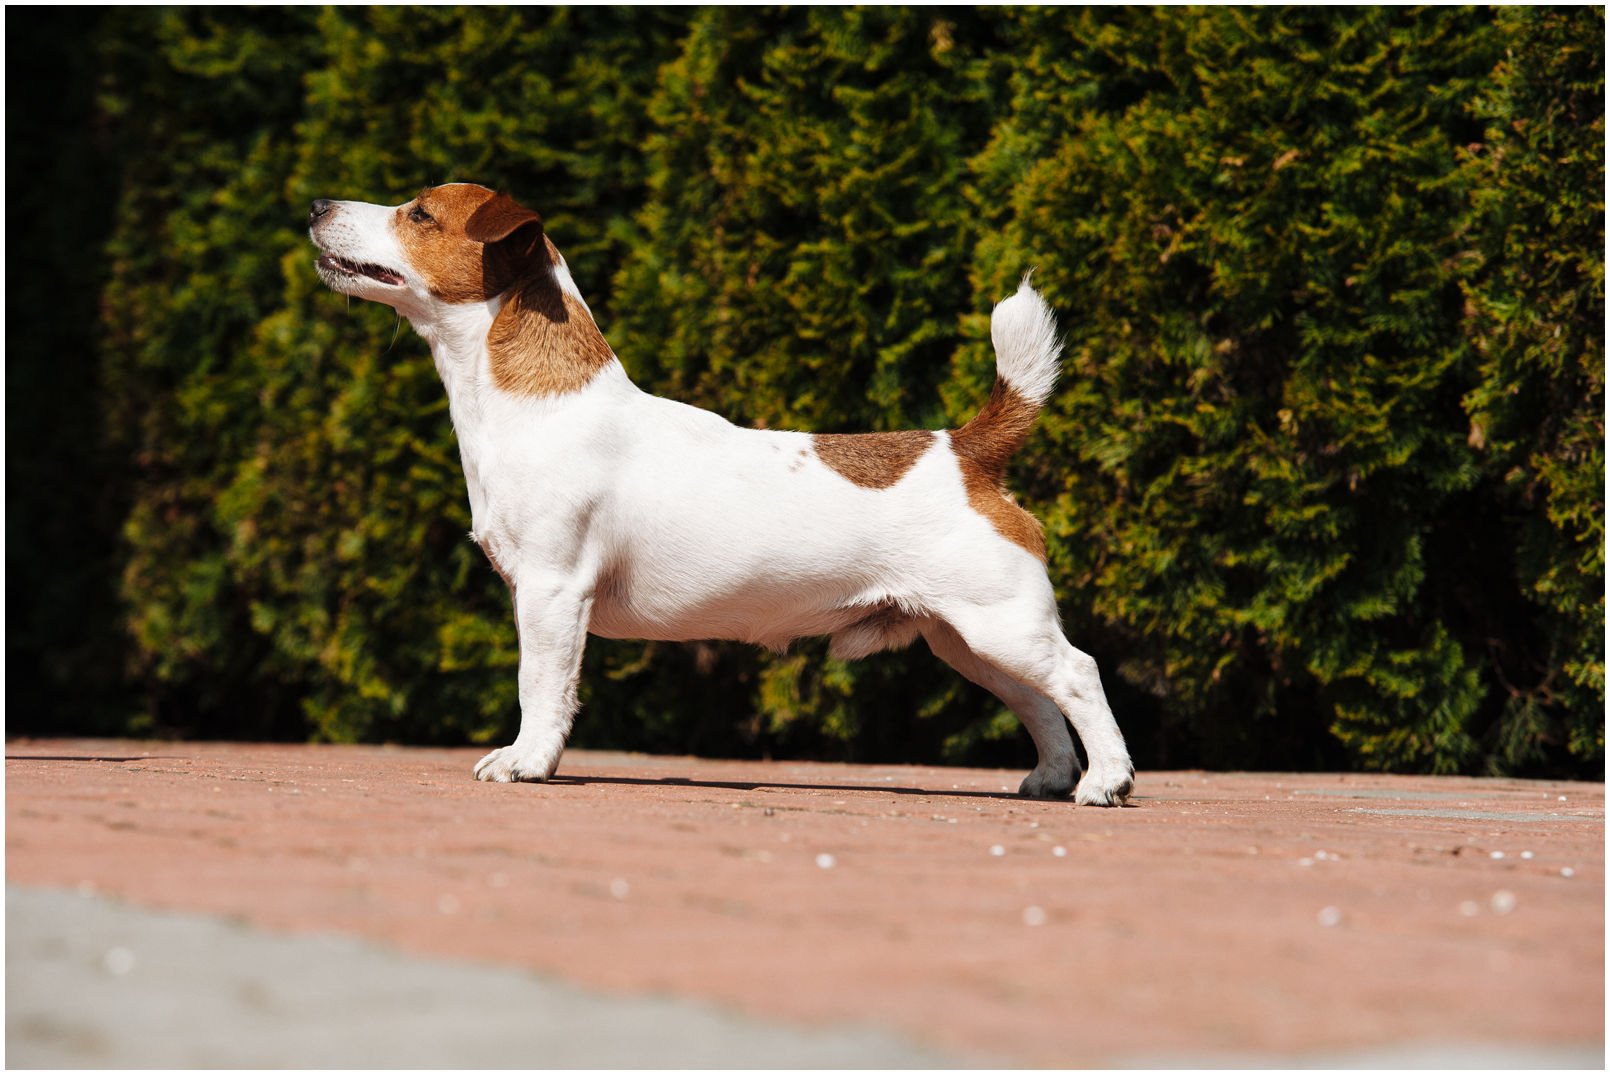 Bronco Bill Drapichrust - Hodowla Jack Russell Terrier Z Todrykowa. Cechy charakterystyczne: dobrze umięśniony, silny pies, pięknie wybarwiony – przekazuje głęboki kolor, doskonały w pracy z człowiekiem, radosny i zrównoważony samiec